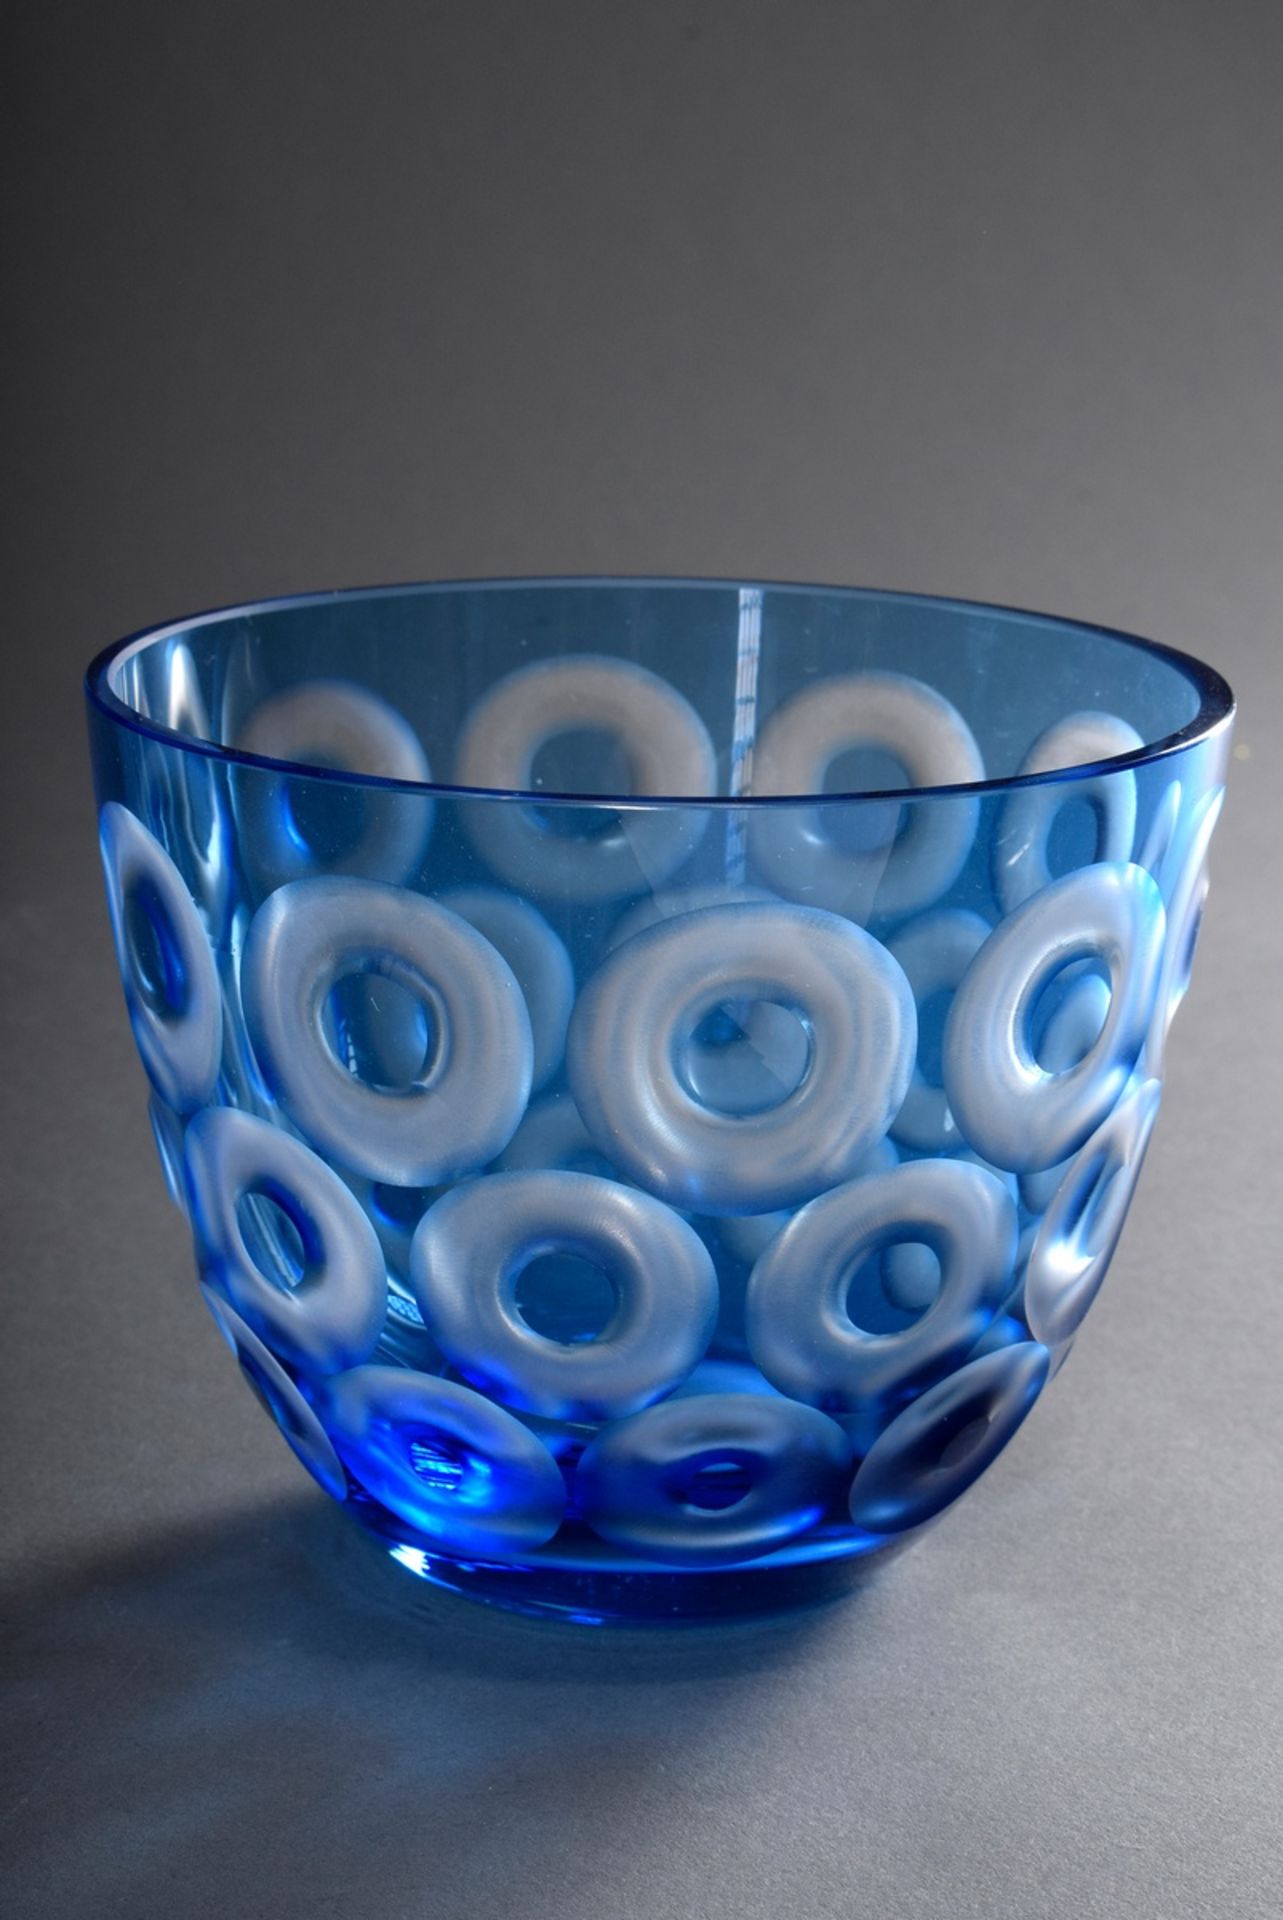 2 Rotter Schalen "Kreise" und "Streifen" in blau | 2 red bowls "Circles" and "Stripes" in blue and - Bild 2 aus 4